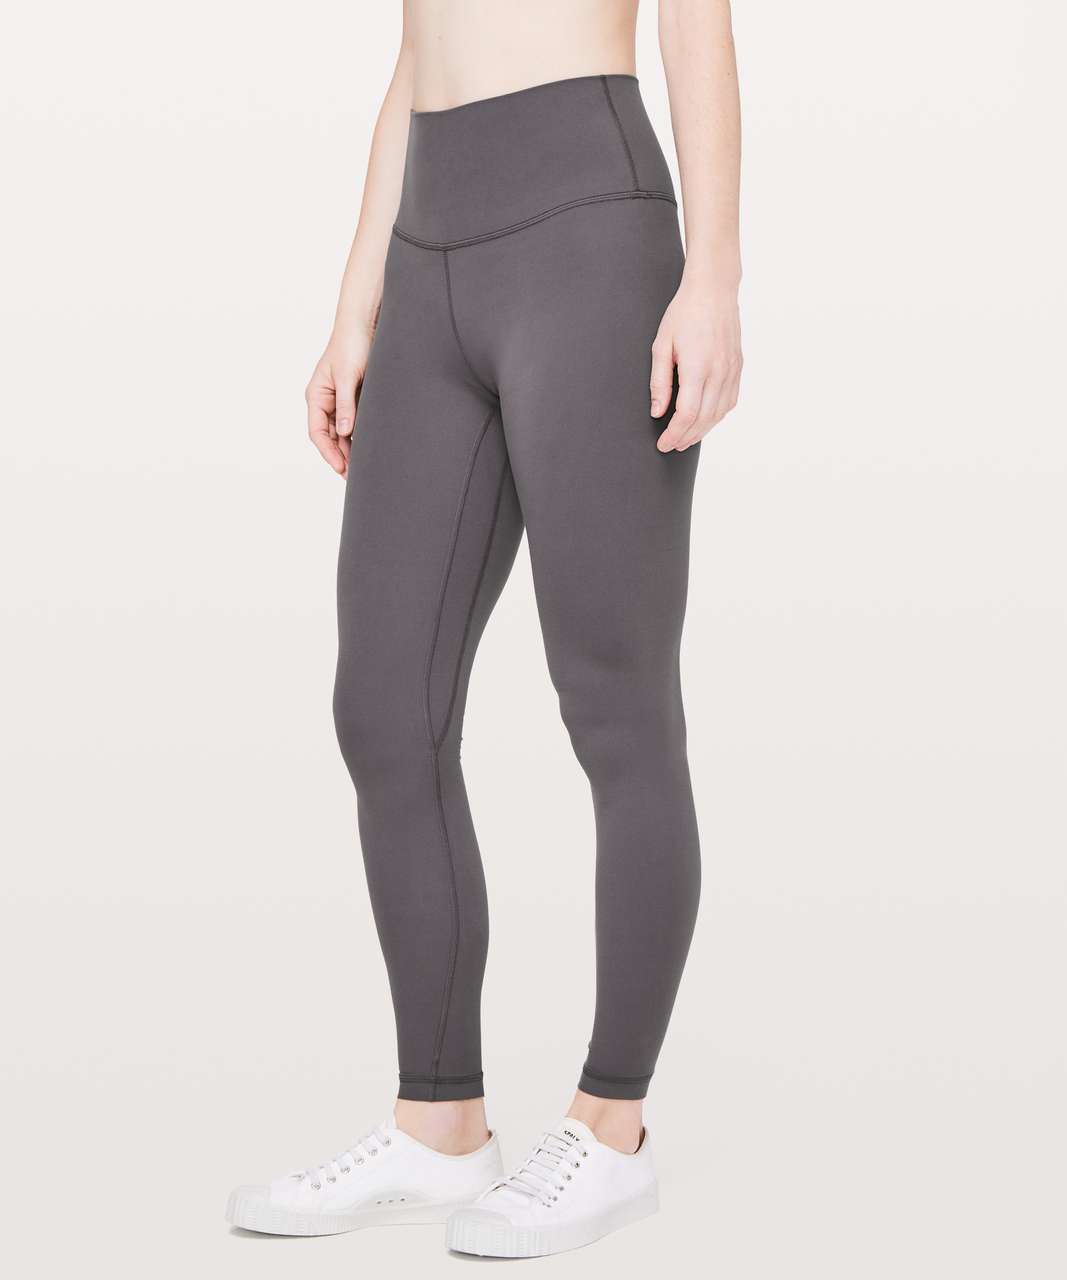 Lululemon Align Full Length Yoga Pants